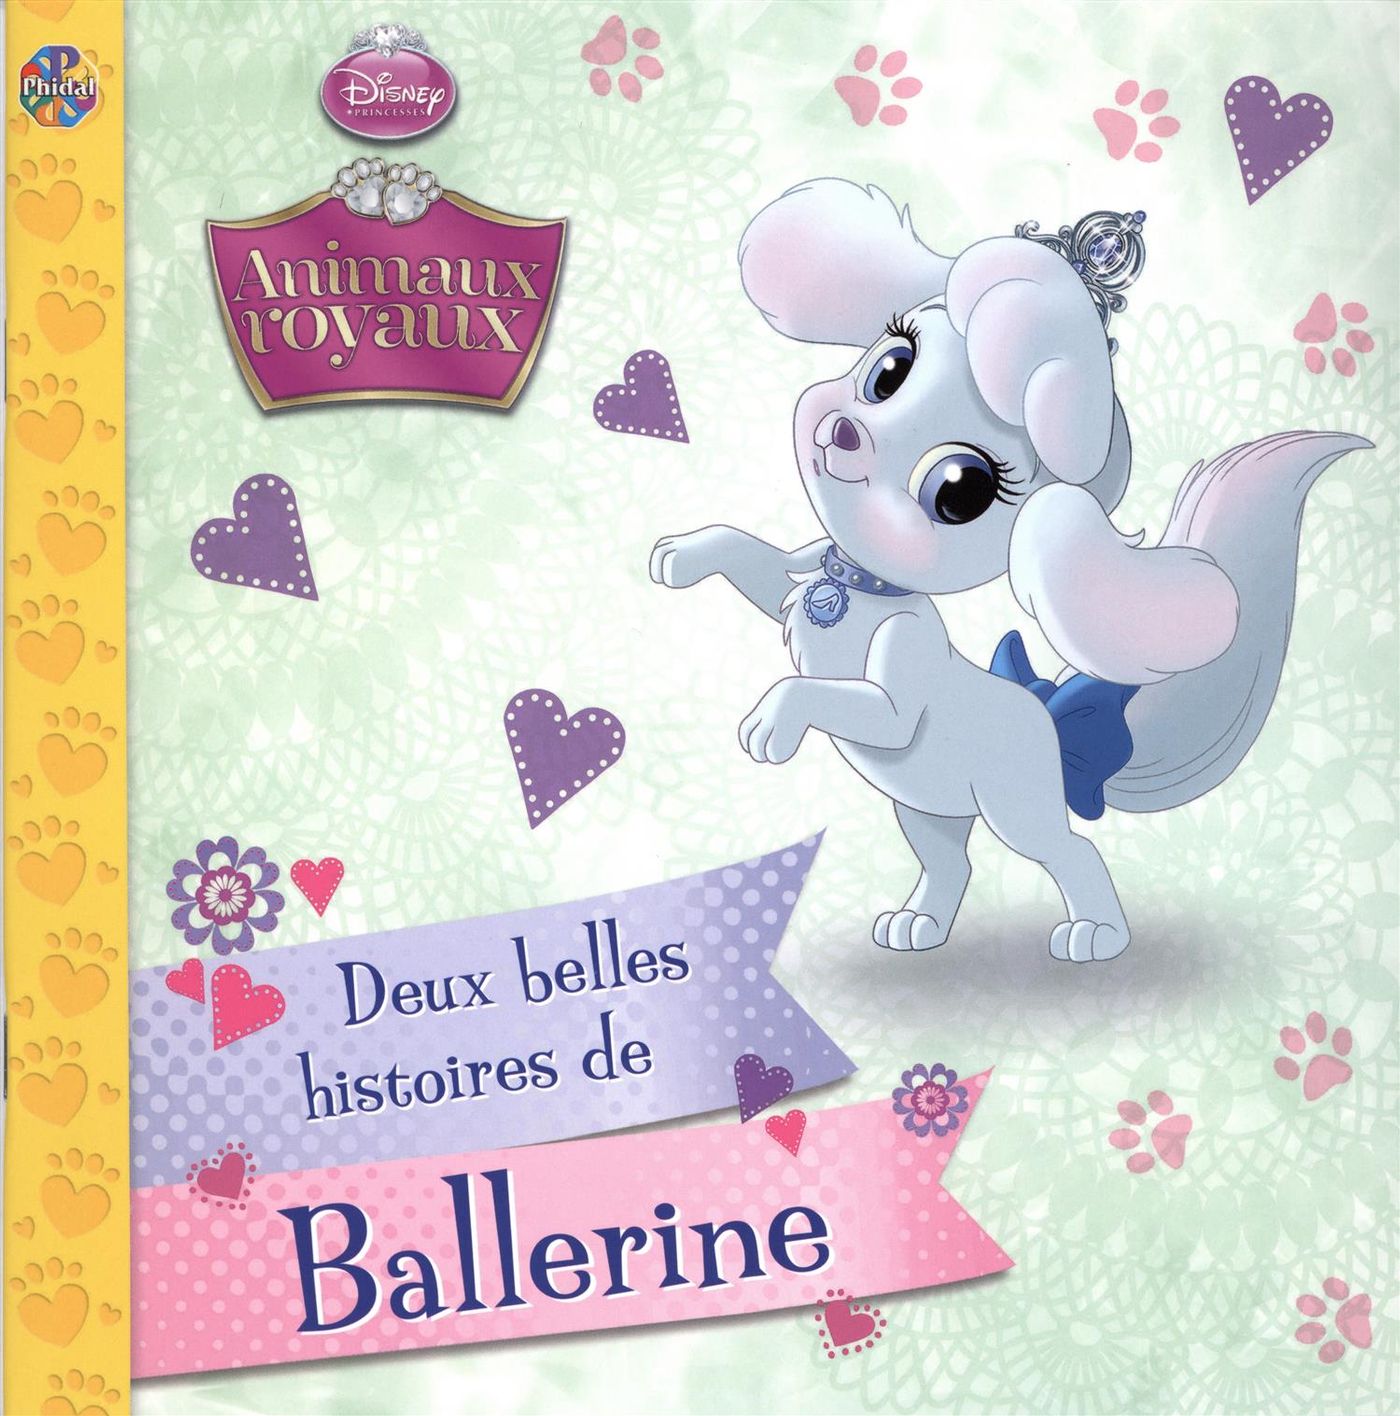 Disney Princesses : Animaux royaux : Deux belles histoires de Ballerine